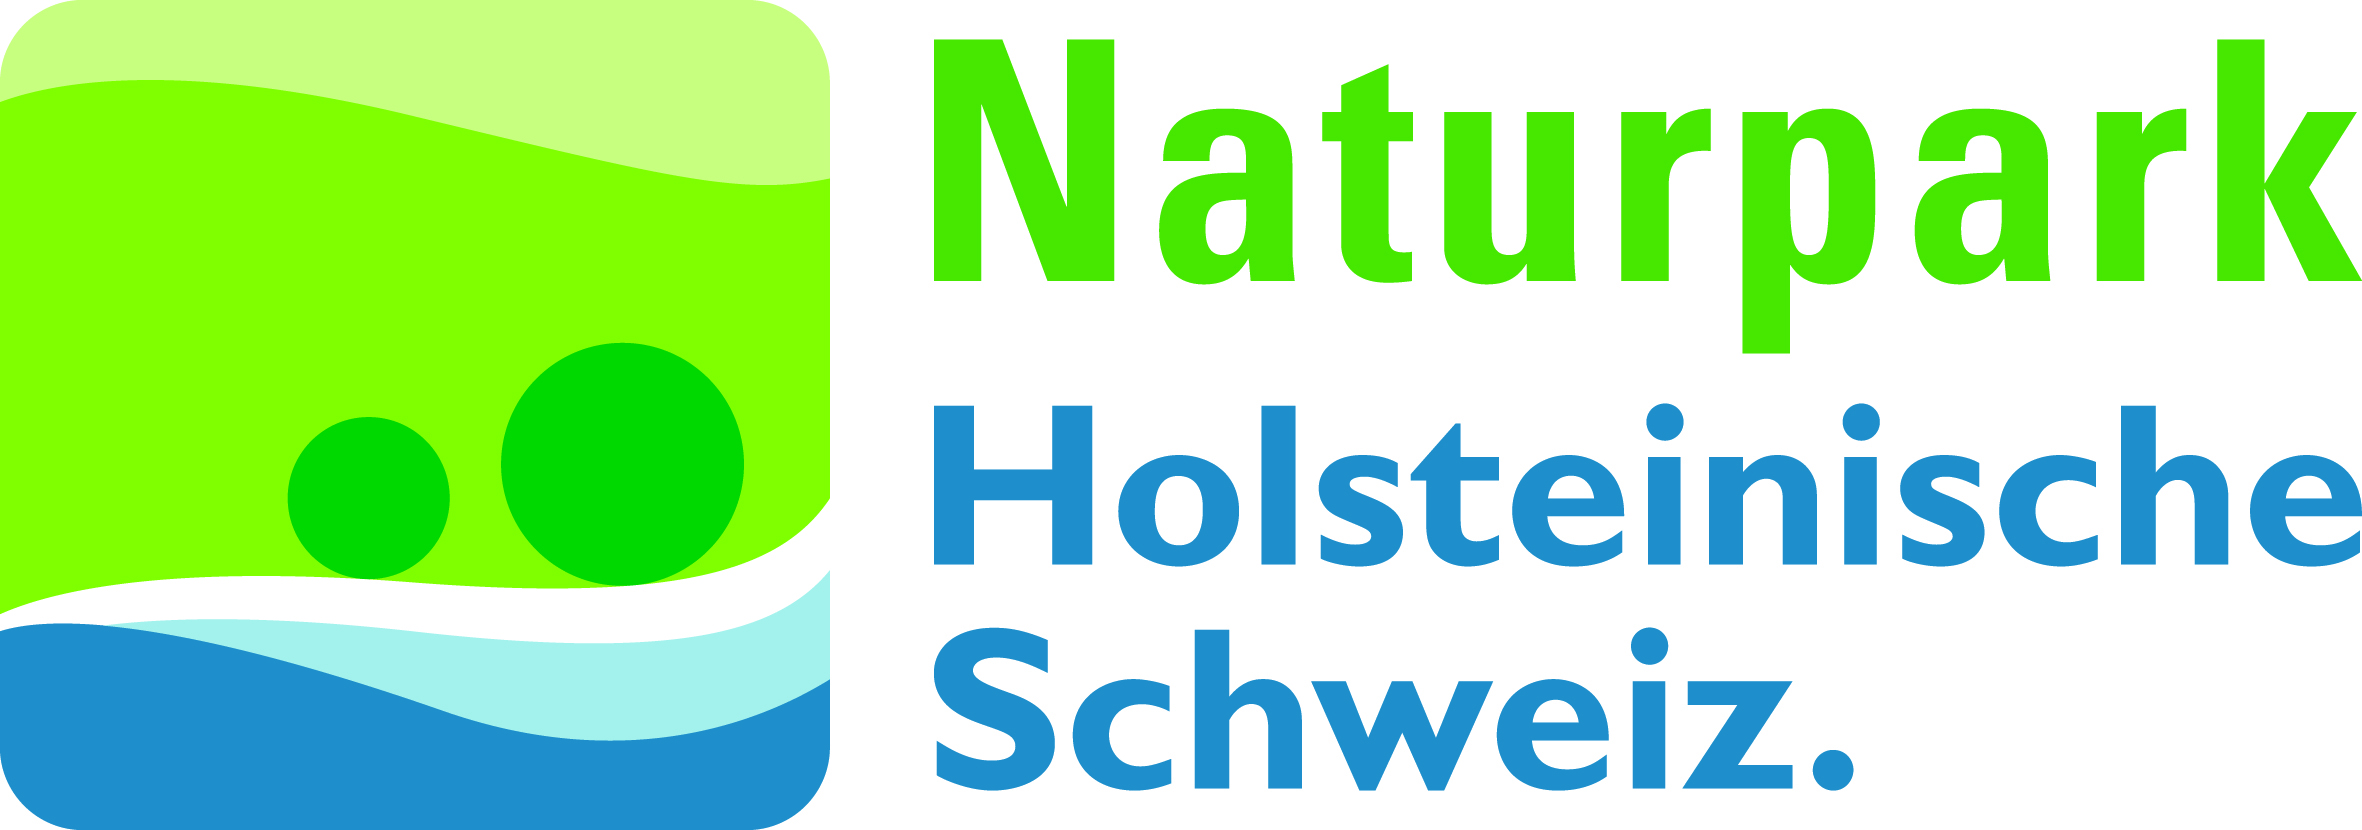 Logo NP Holst Schwz RZ CMYK2 Neuer Naturparkplan wird erstellt